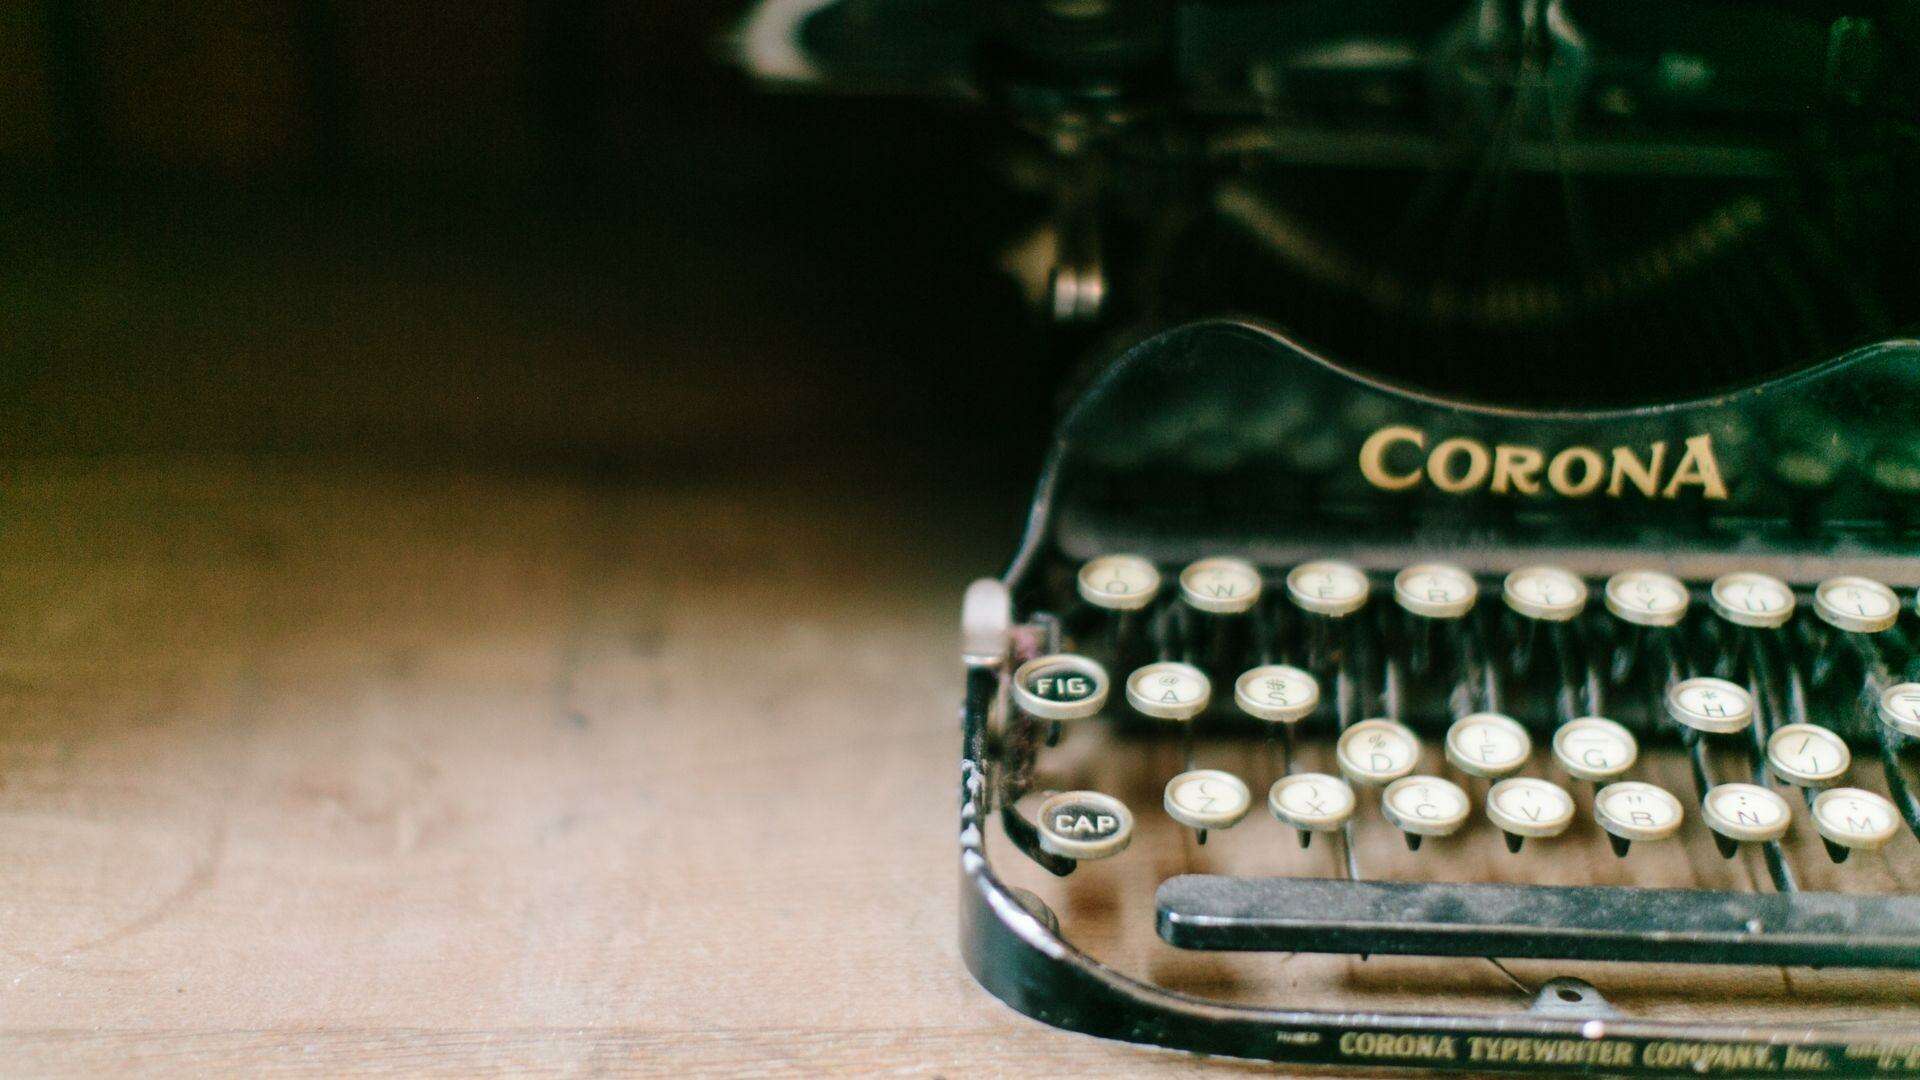 Old Vintage Typewriter on a Desk